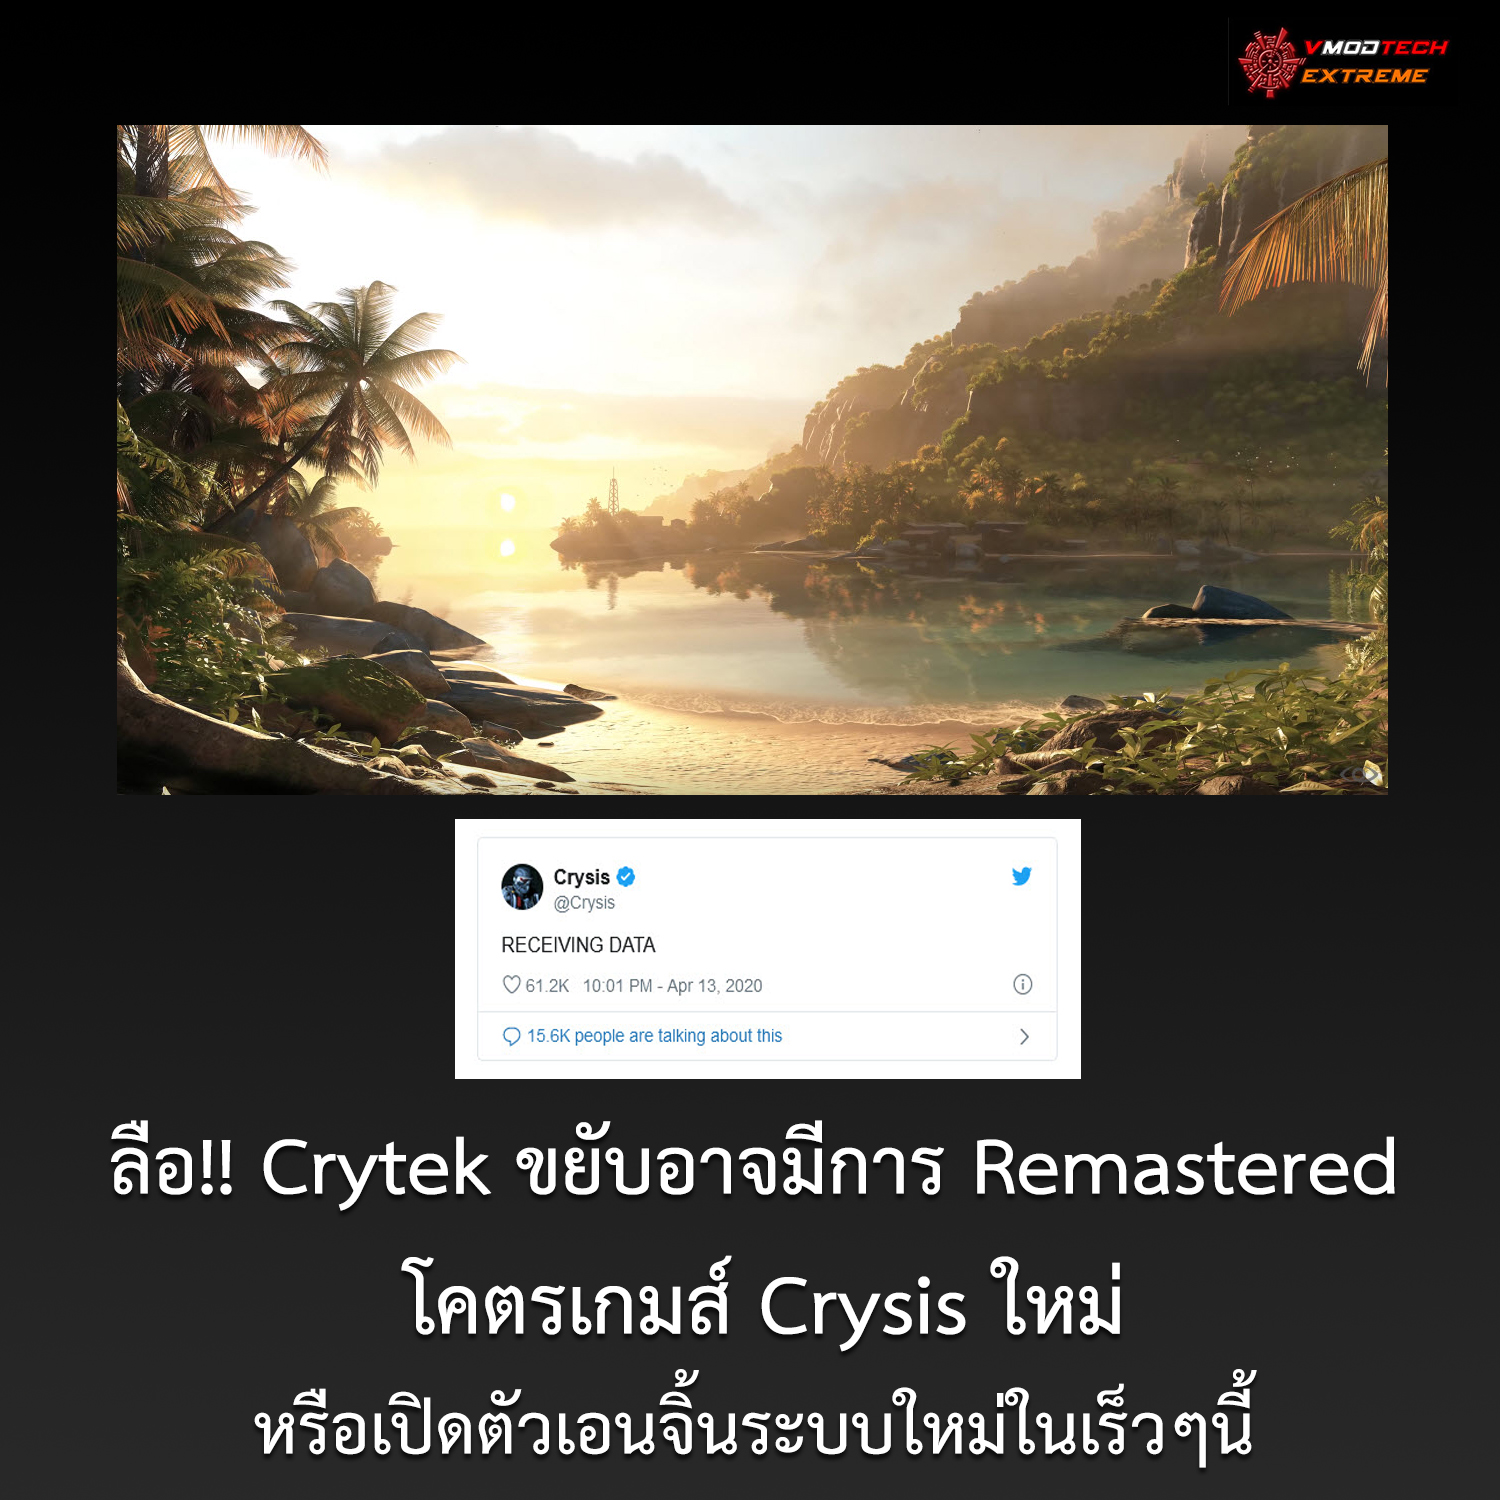 crysis20201 ลือ!! Crytek ขยับอาจมีการ Remastered โคตรเกมส์ Crysis ใหม่หรือเปิดตัวเอนจิ้นระบบใหม่ในเร็วๆนี้ 